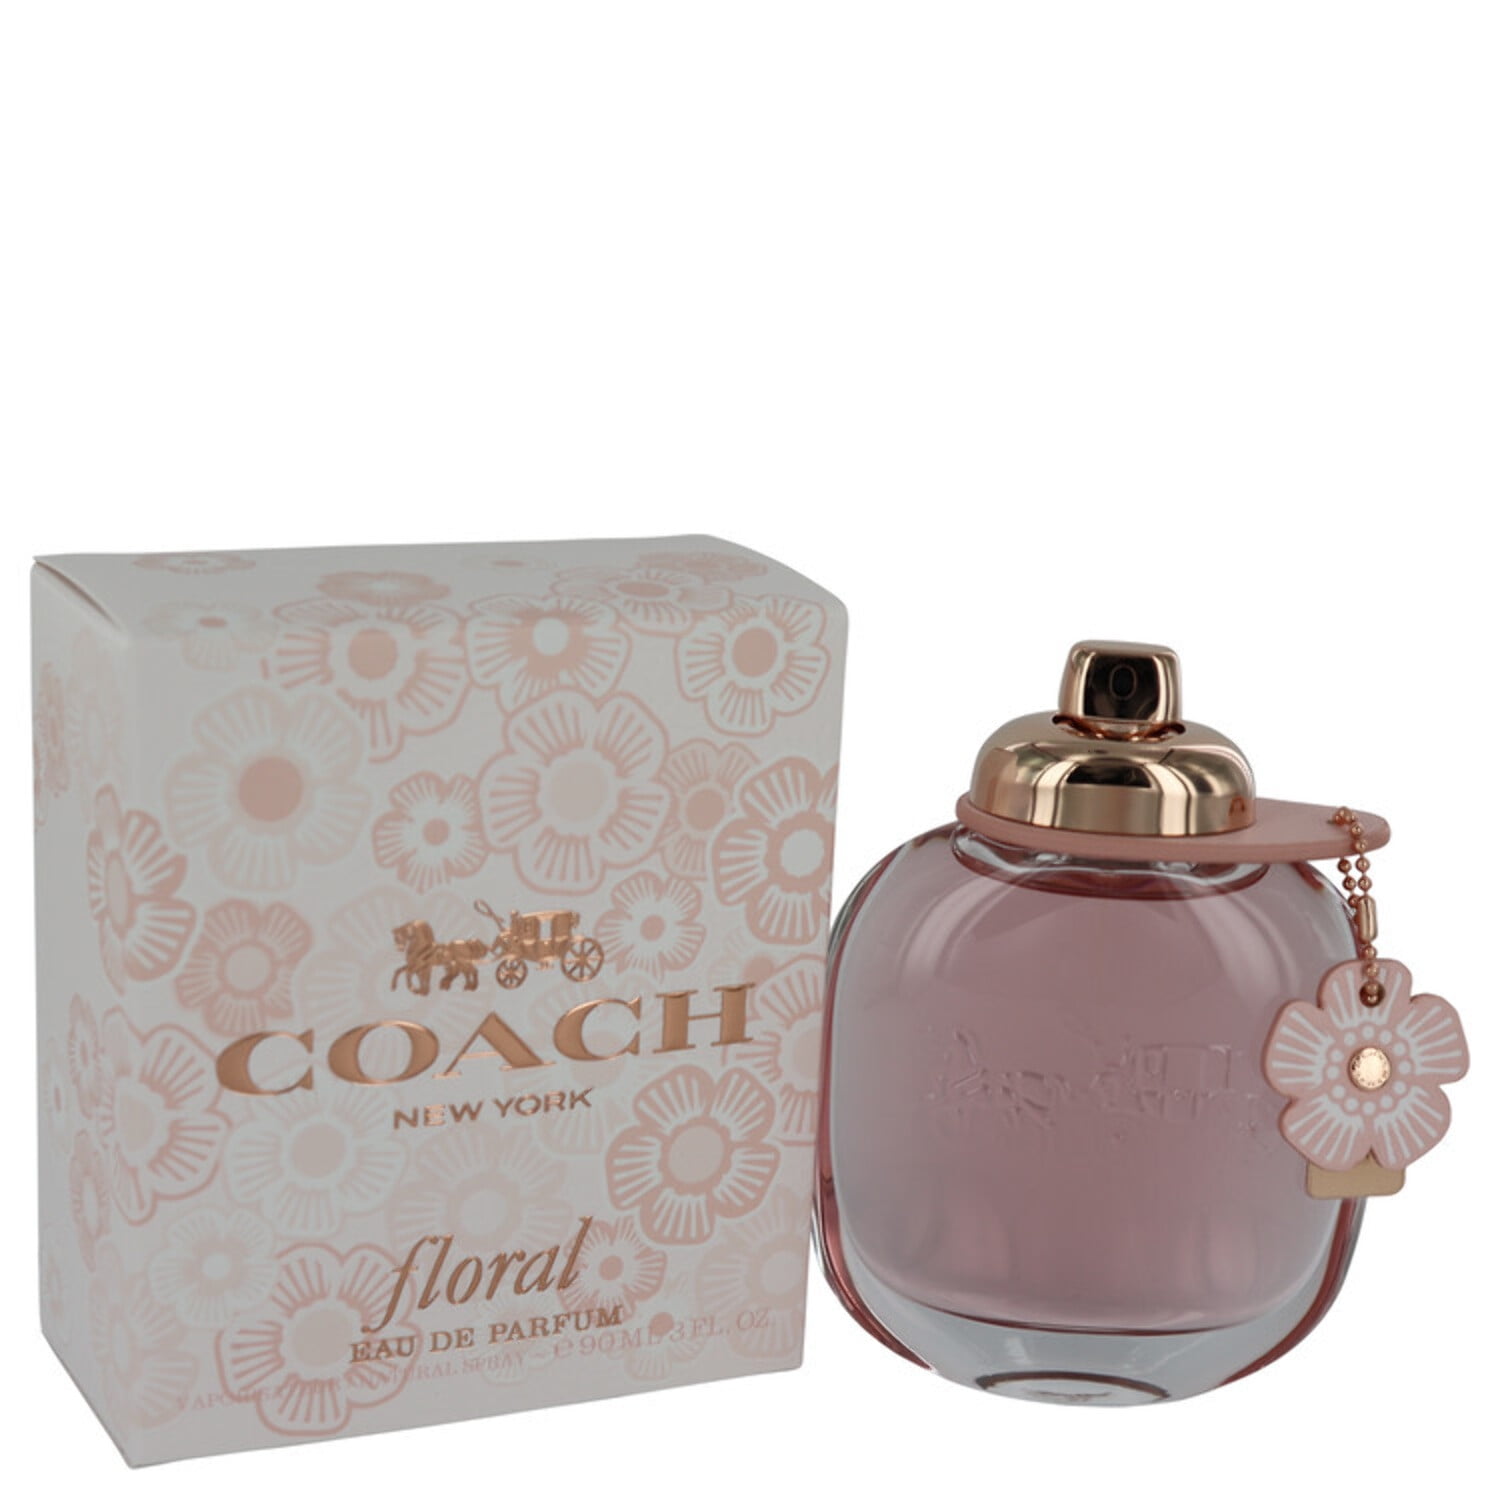 Coach Floral Eau The Parfum Perfume Gift Set for Women, 3 Pieces -  